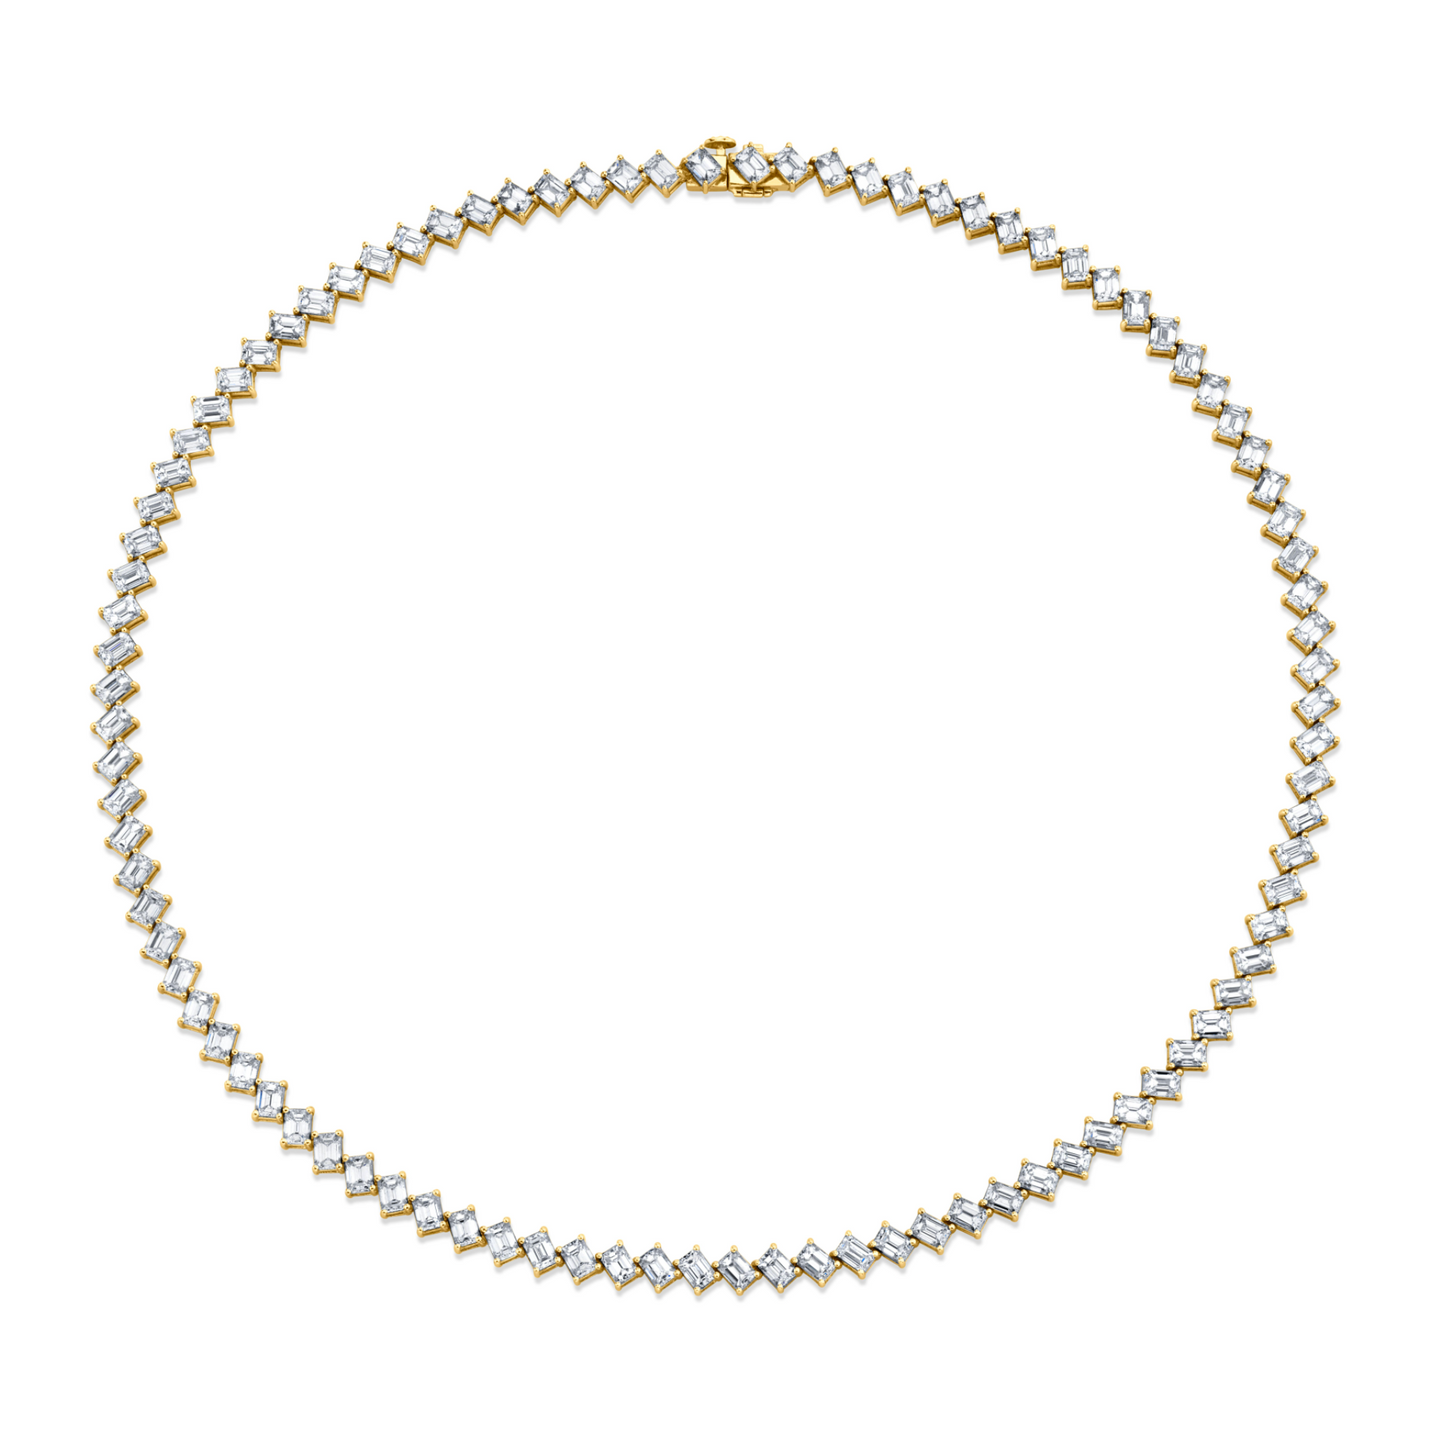 18.13 Carat Diamond Emerald Cut Necklace